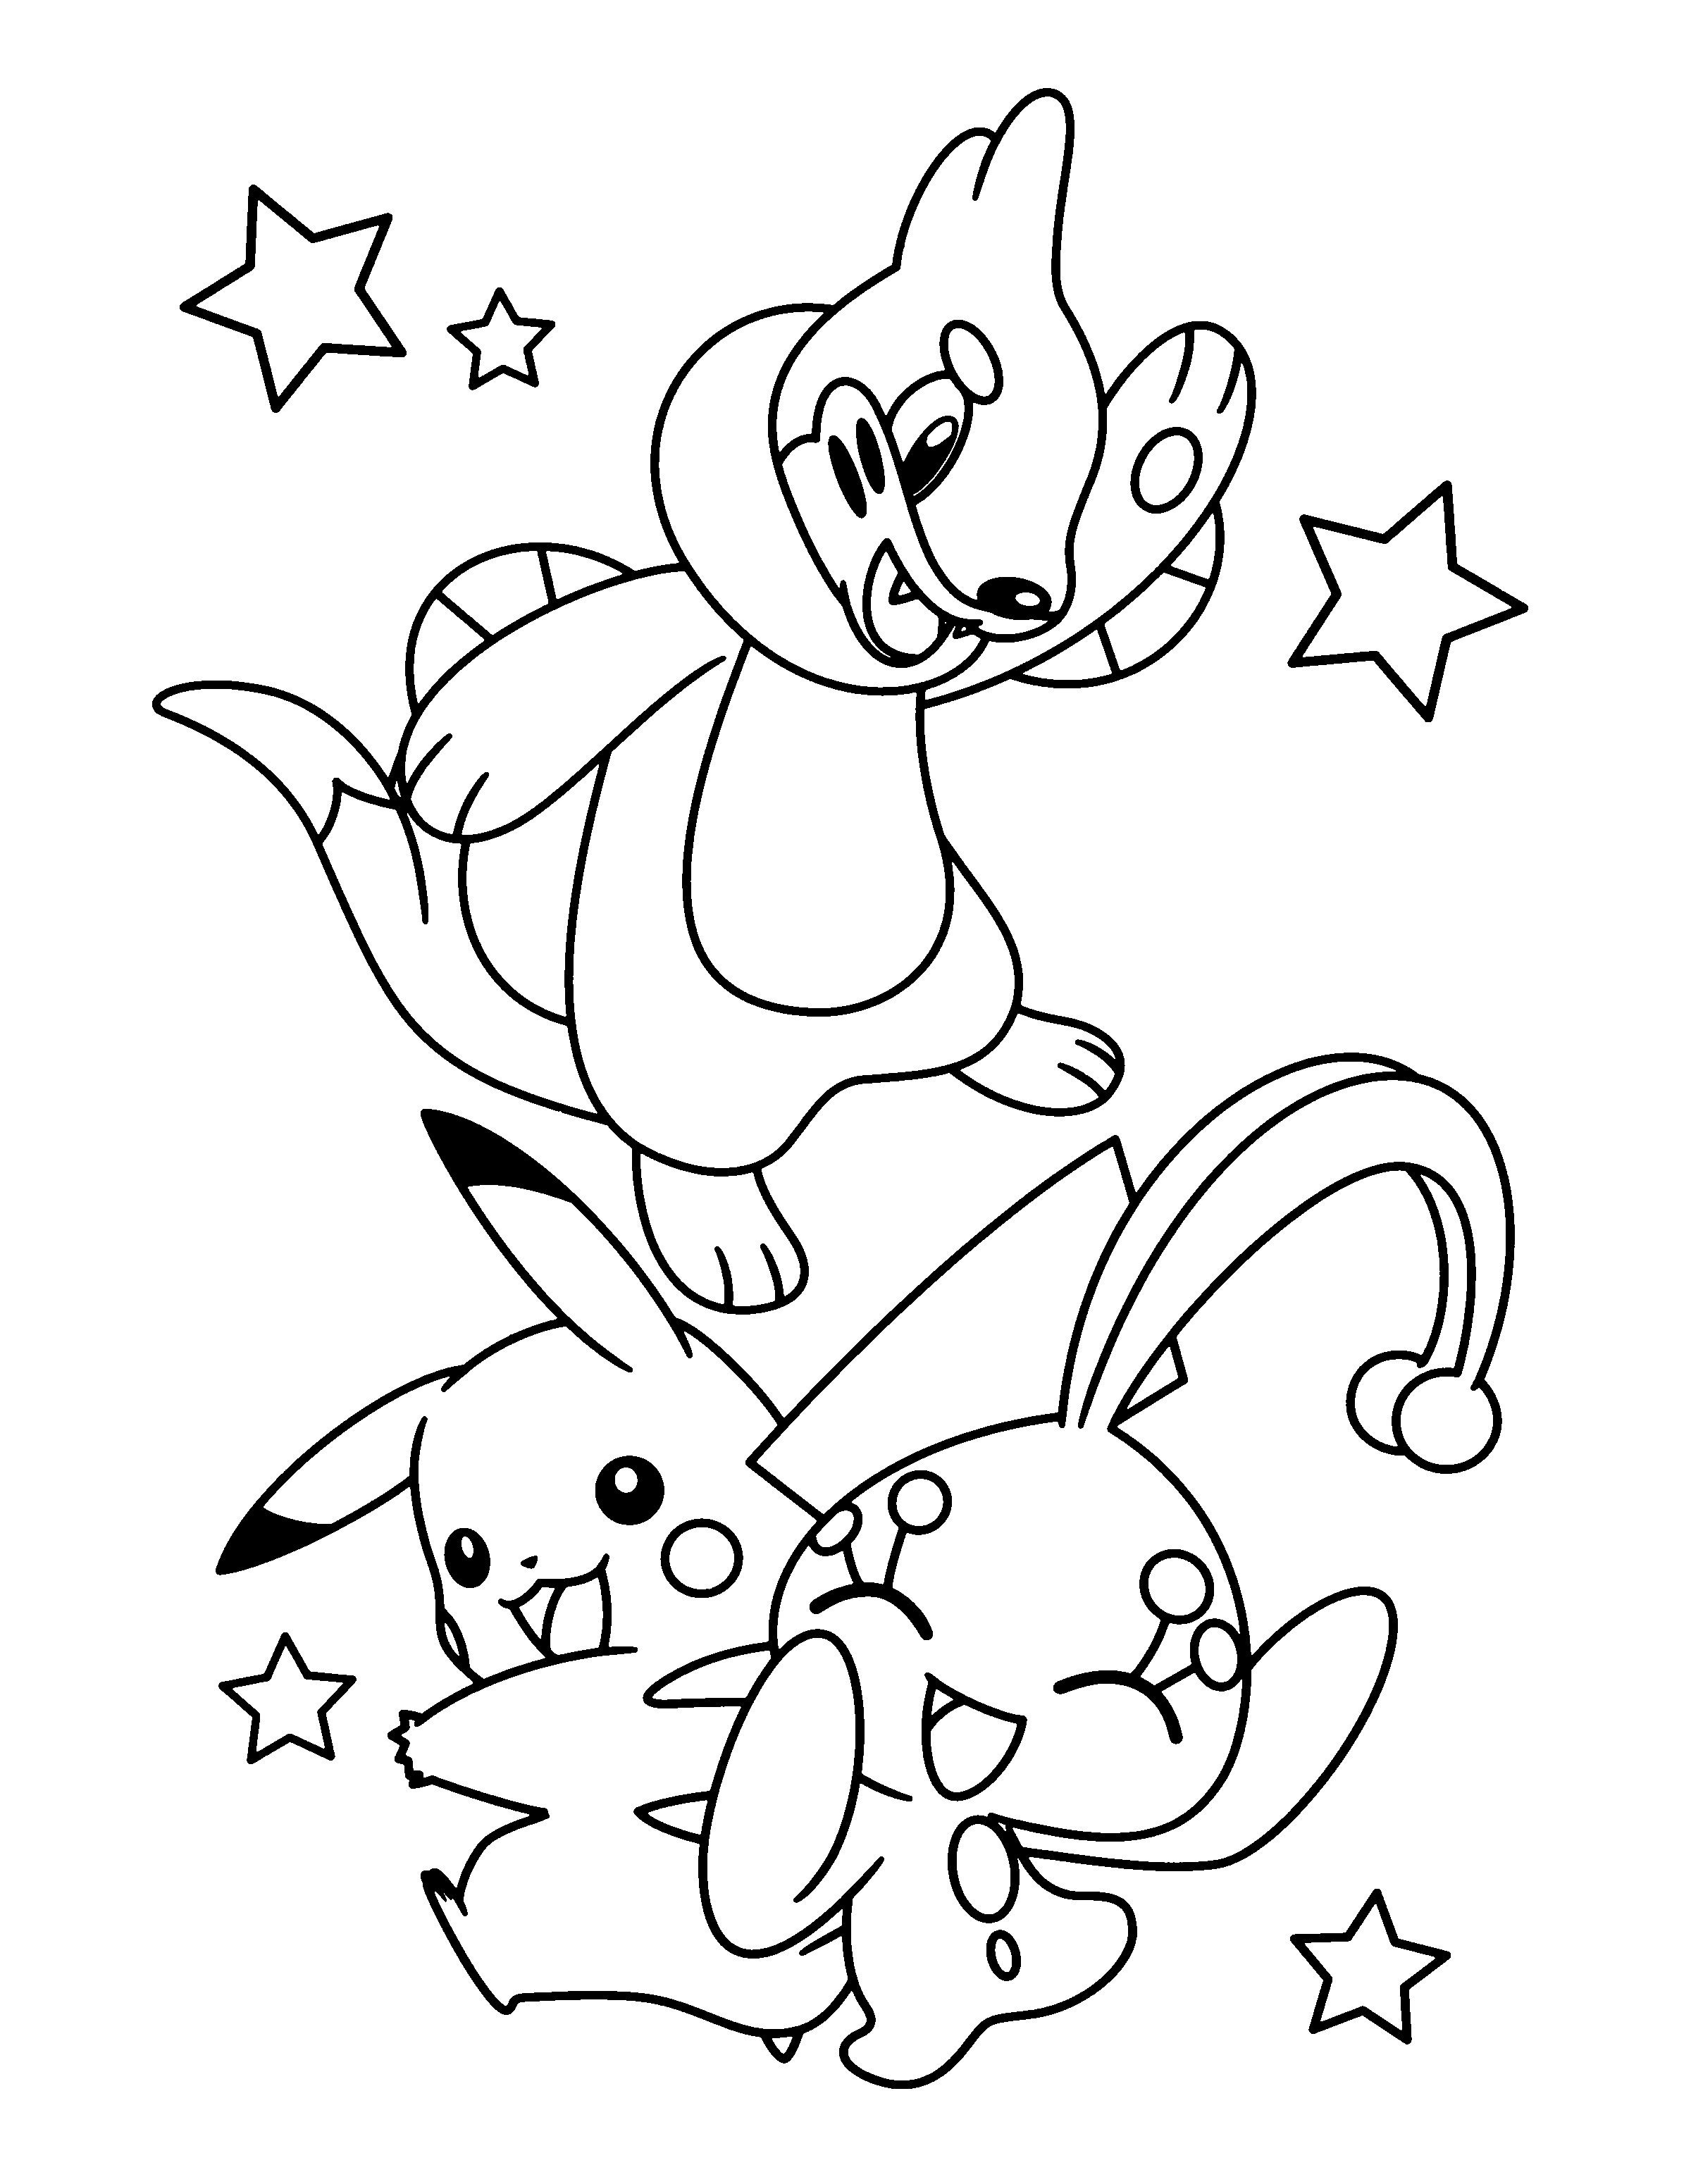 dibujo-para-colorear-pokemon-imagen-animada-0775